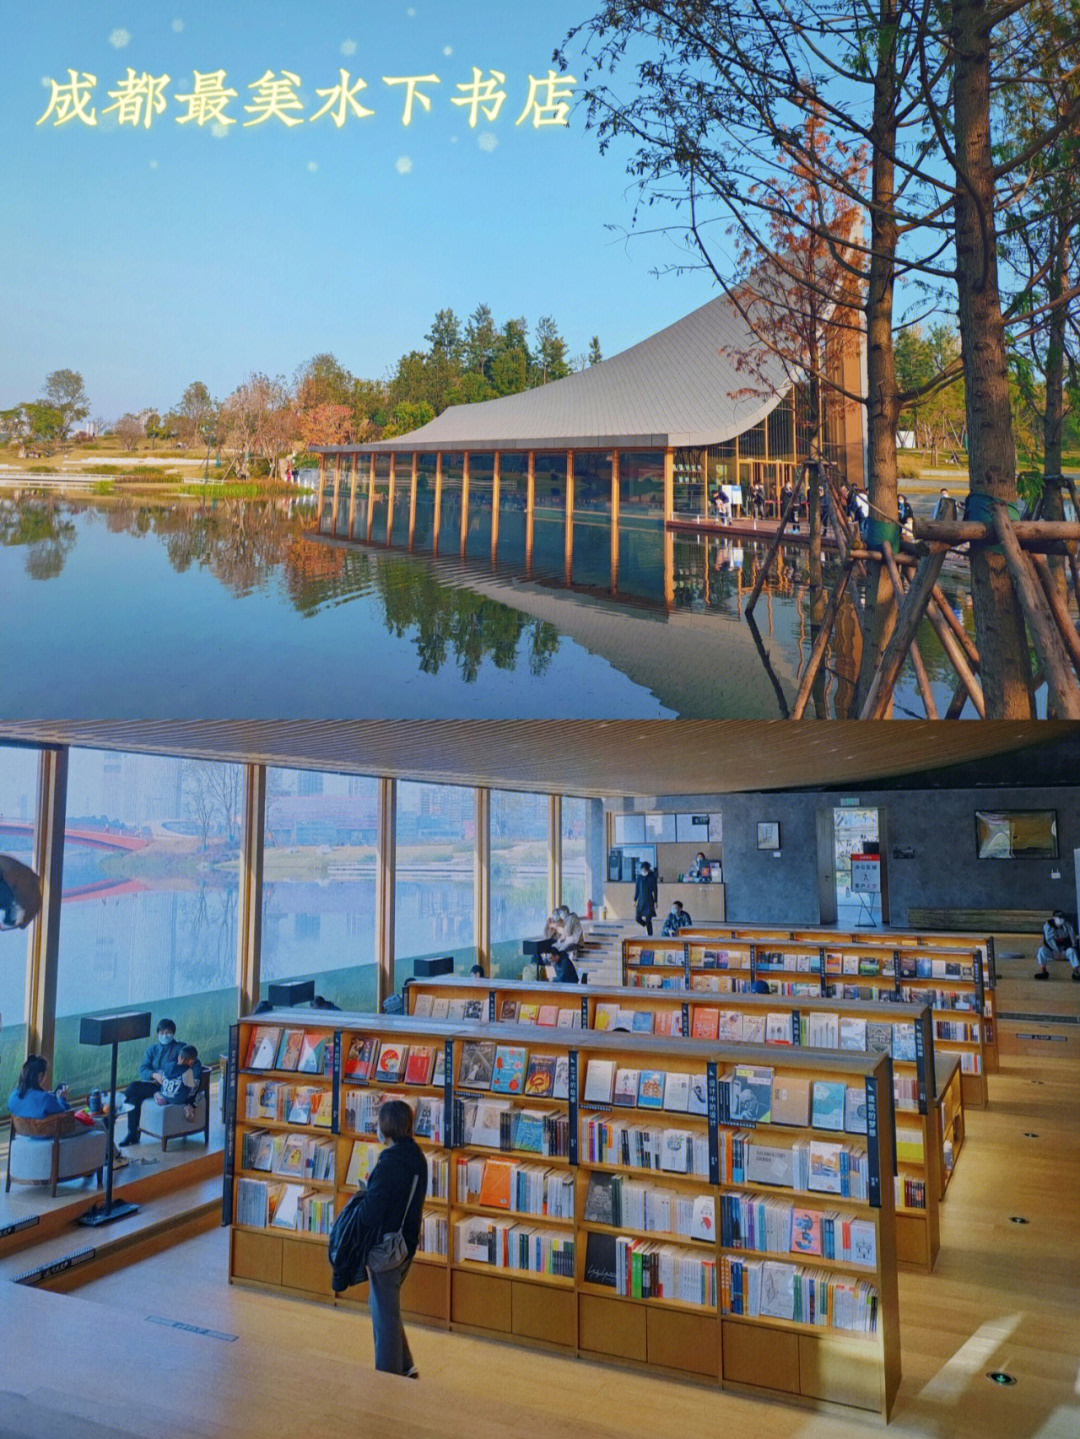 成都兴隆湖最美书店图片